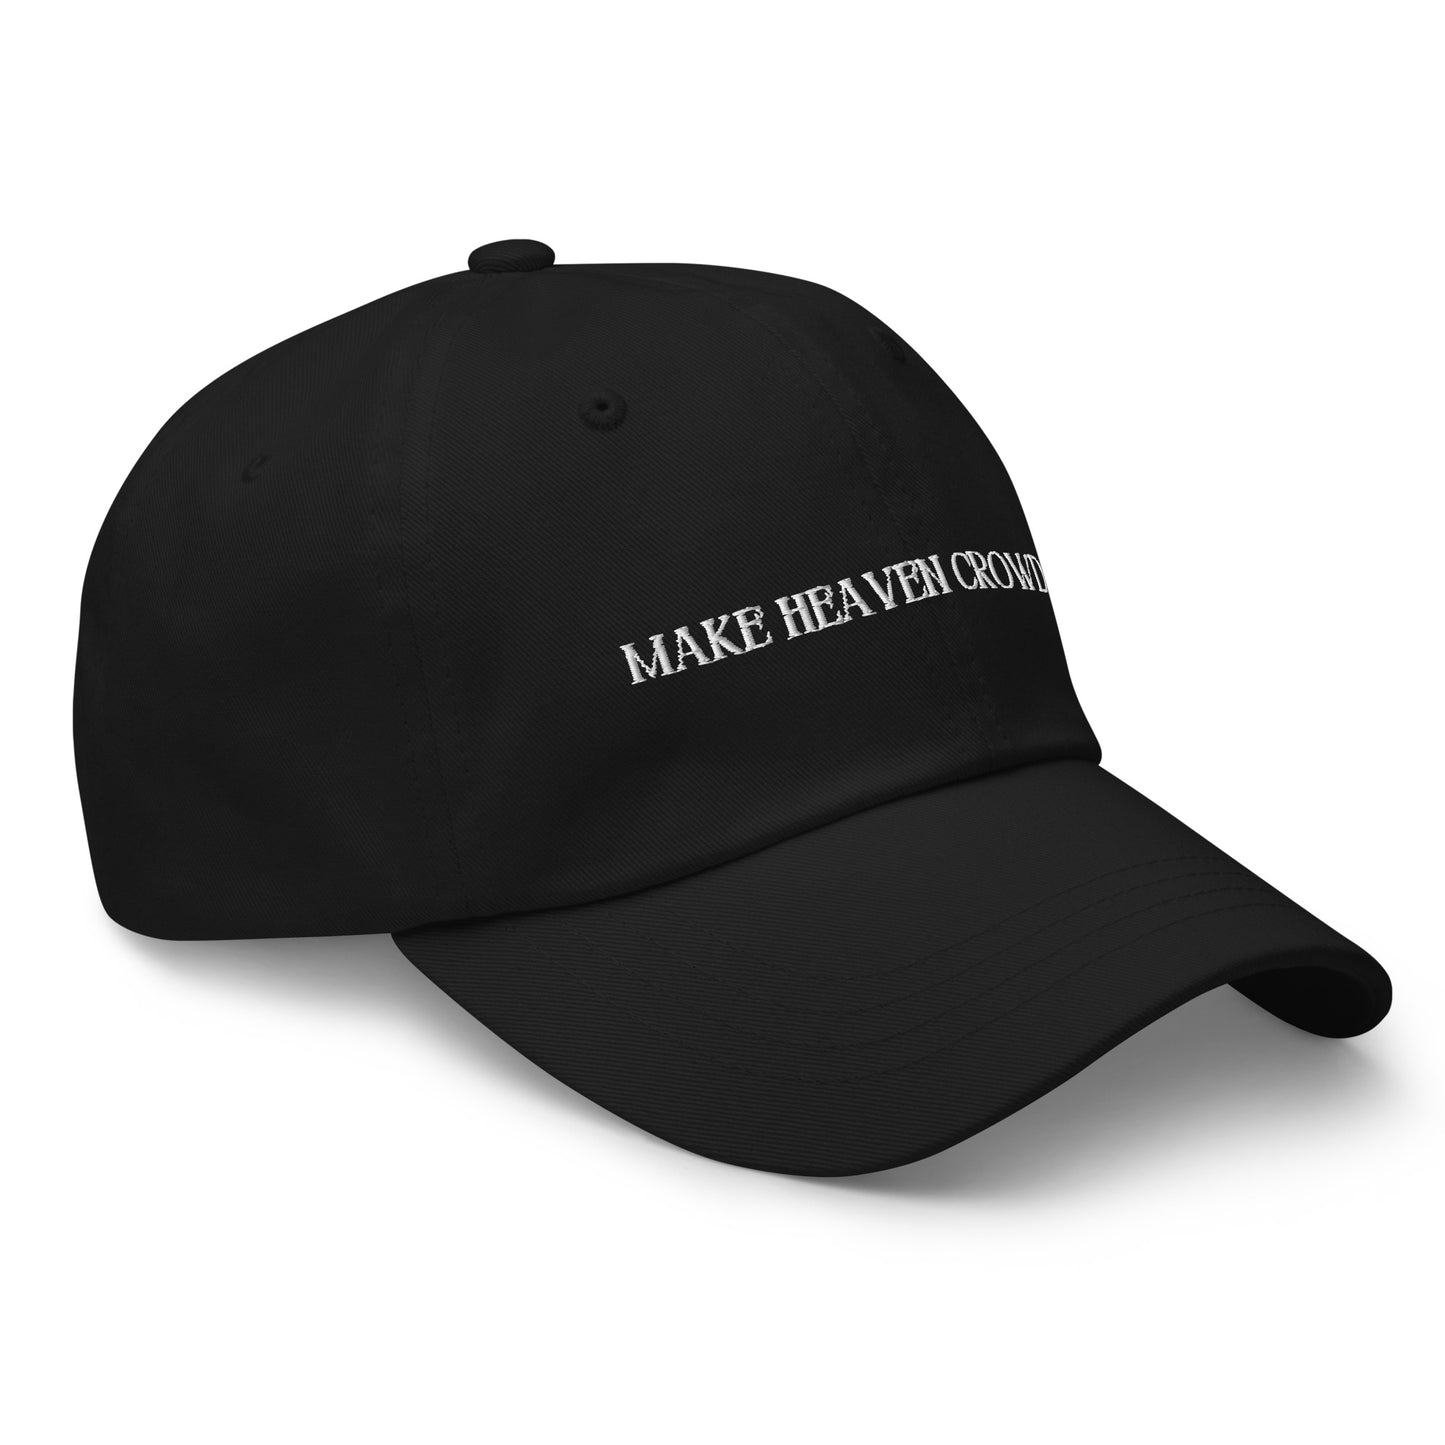 Make Heaven Crowded Baseball Hat